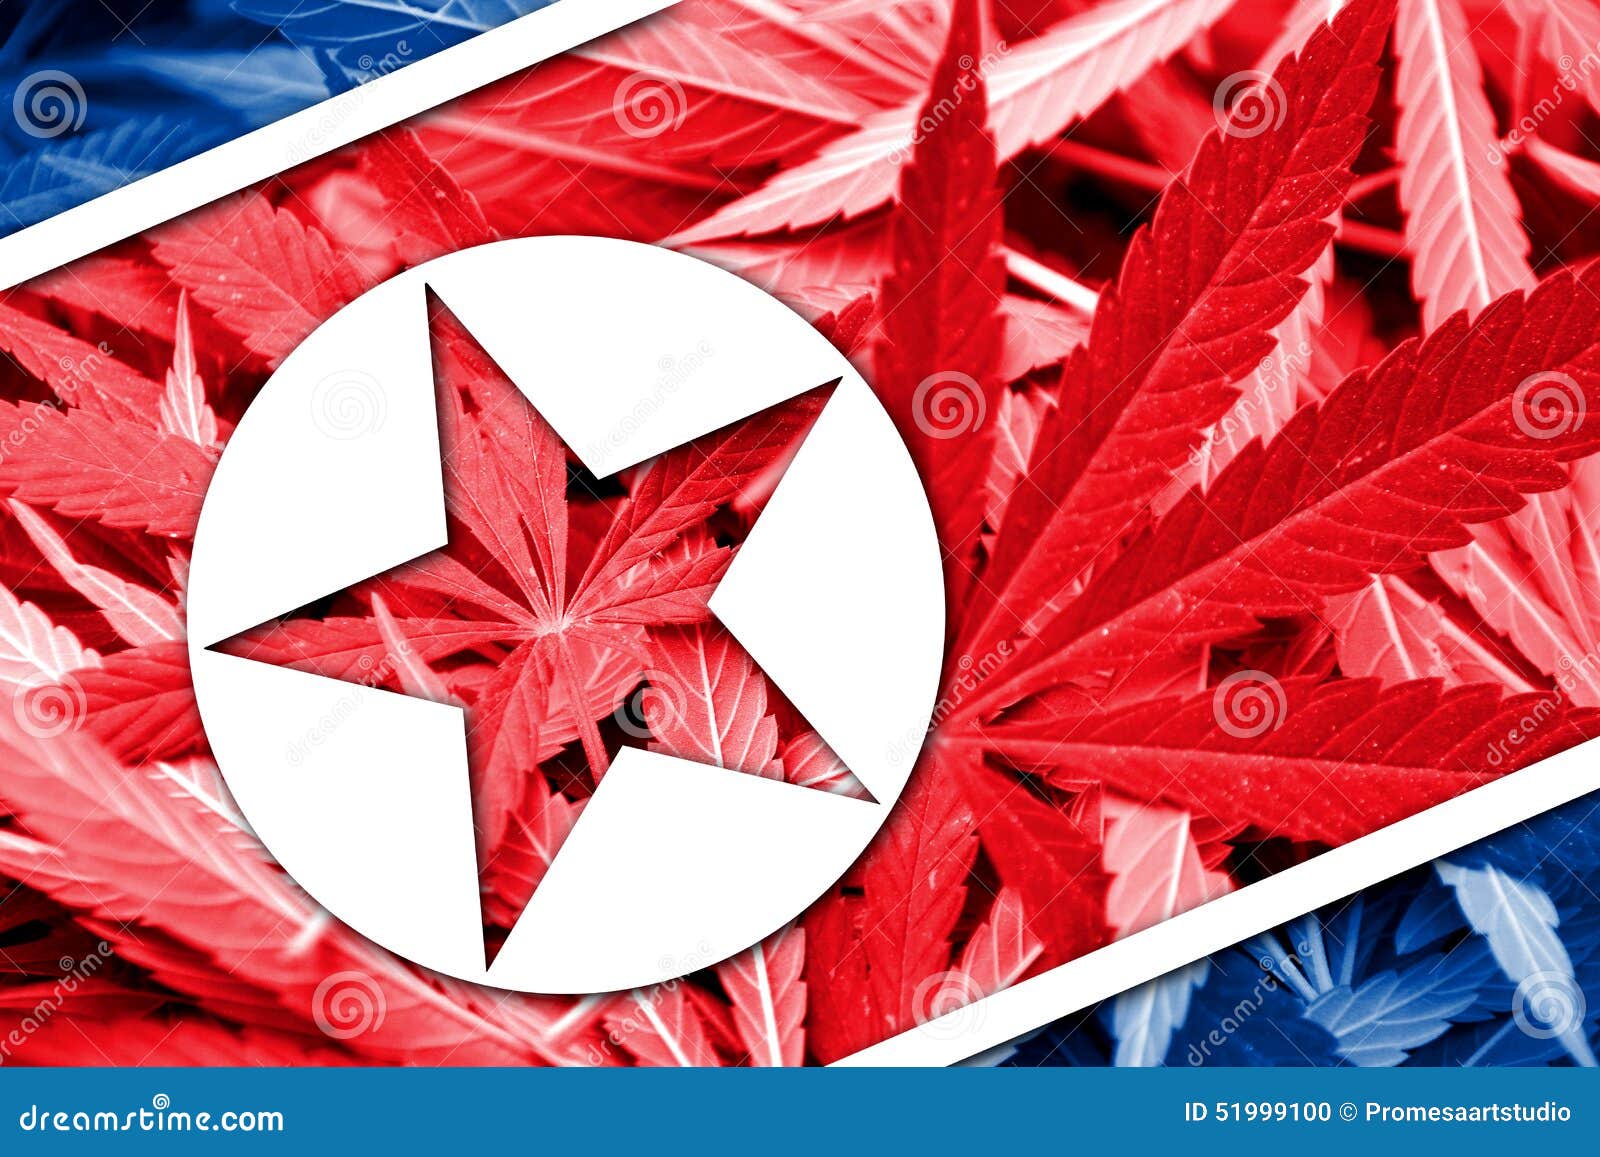 Северная корея легализация марихуаны урбеч из конопляных семян